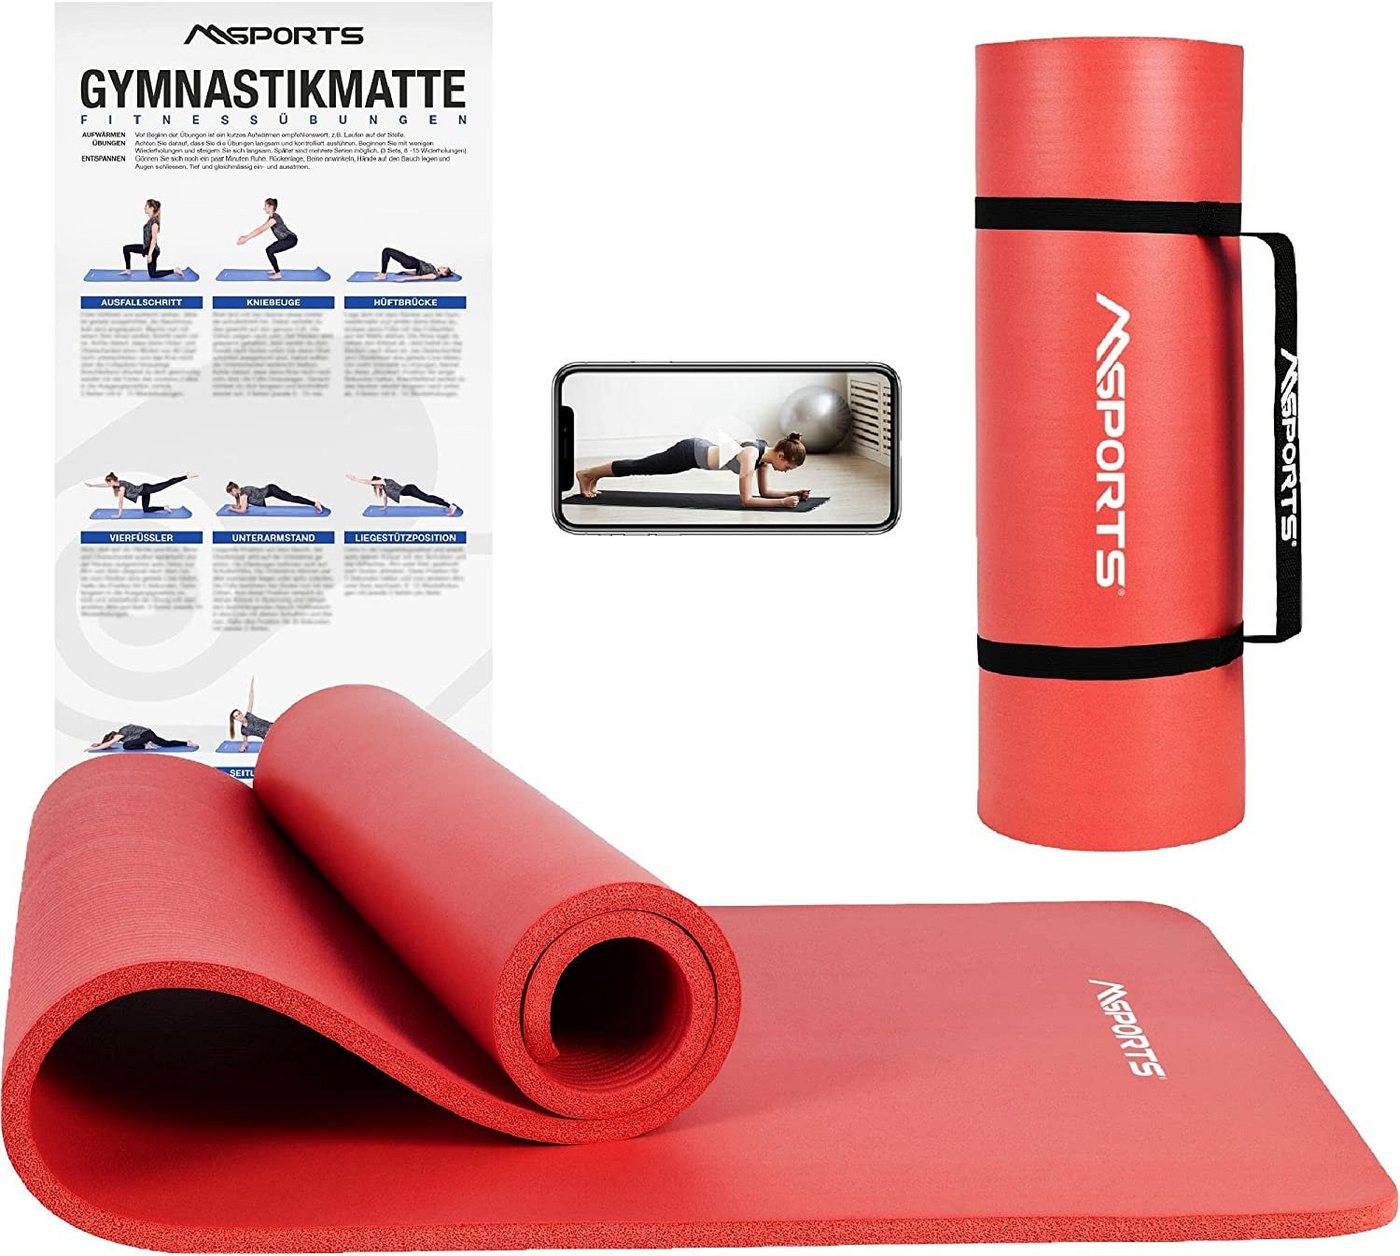 MSports® Gymnastikmatte Yogamatte rutschfest inkl. Tragegurt + Poster + Workout App von MSports®